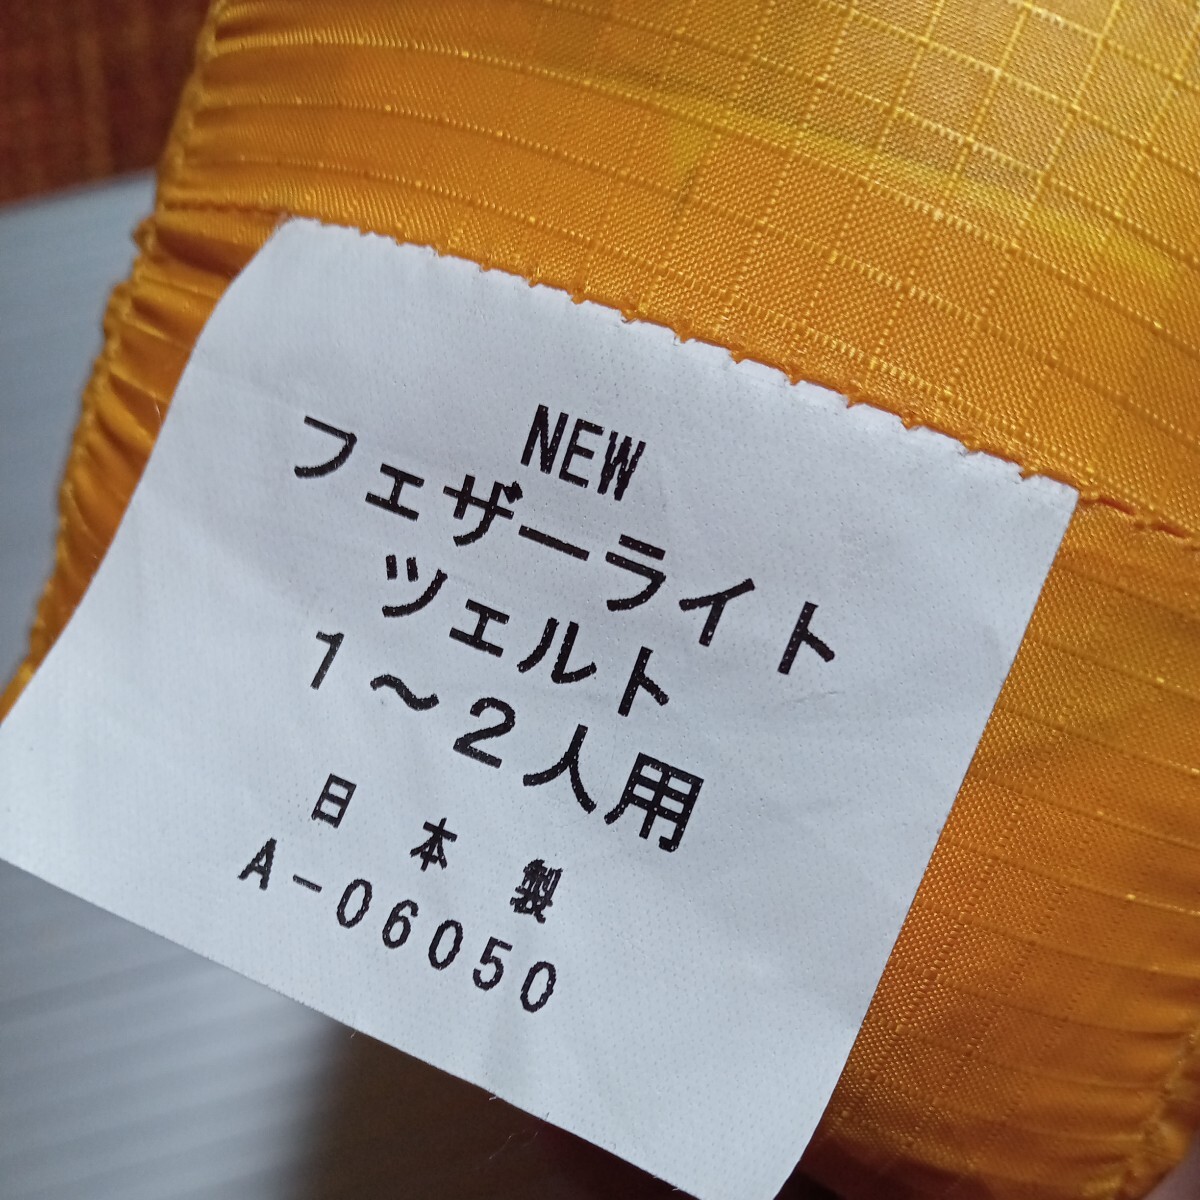 【未使用 日本製】PAINE NEW フェザーライト ツェルト 1〜2人用　A-06050 パイネ ビバーク テント _画像3